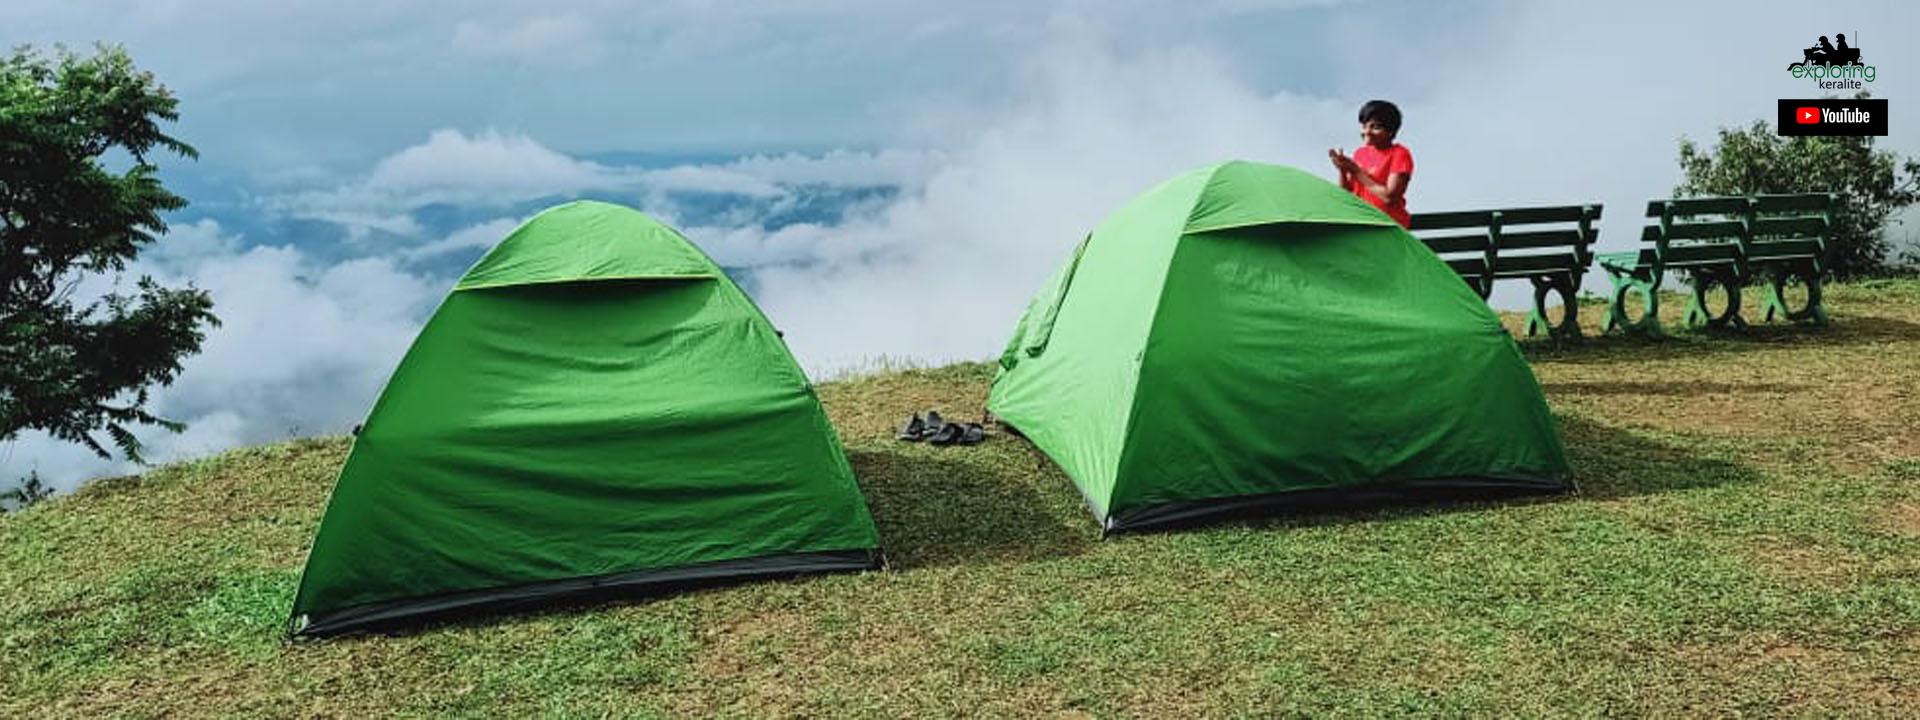 kerala-tent-camping